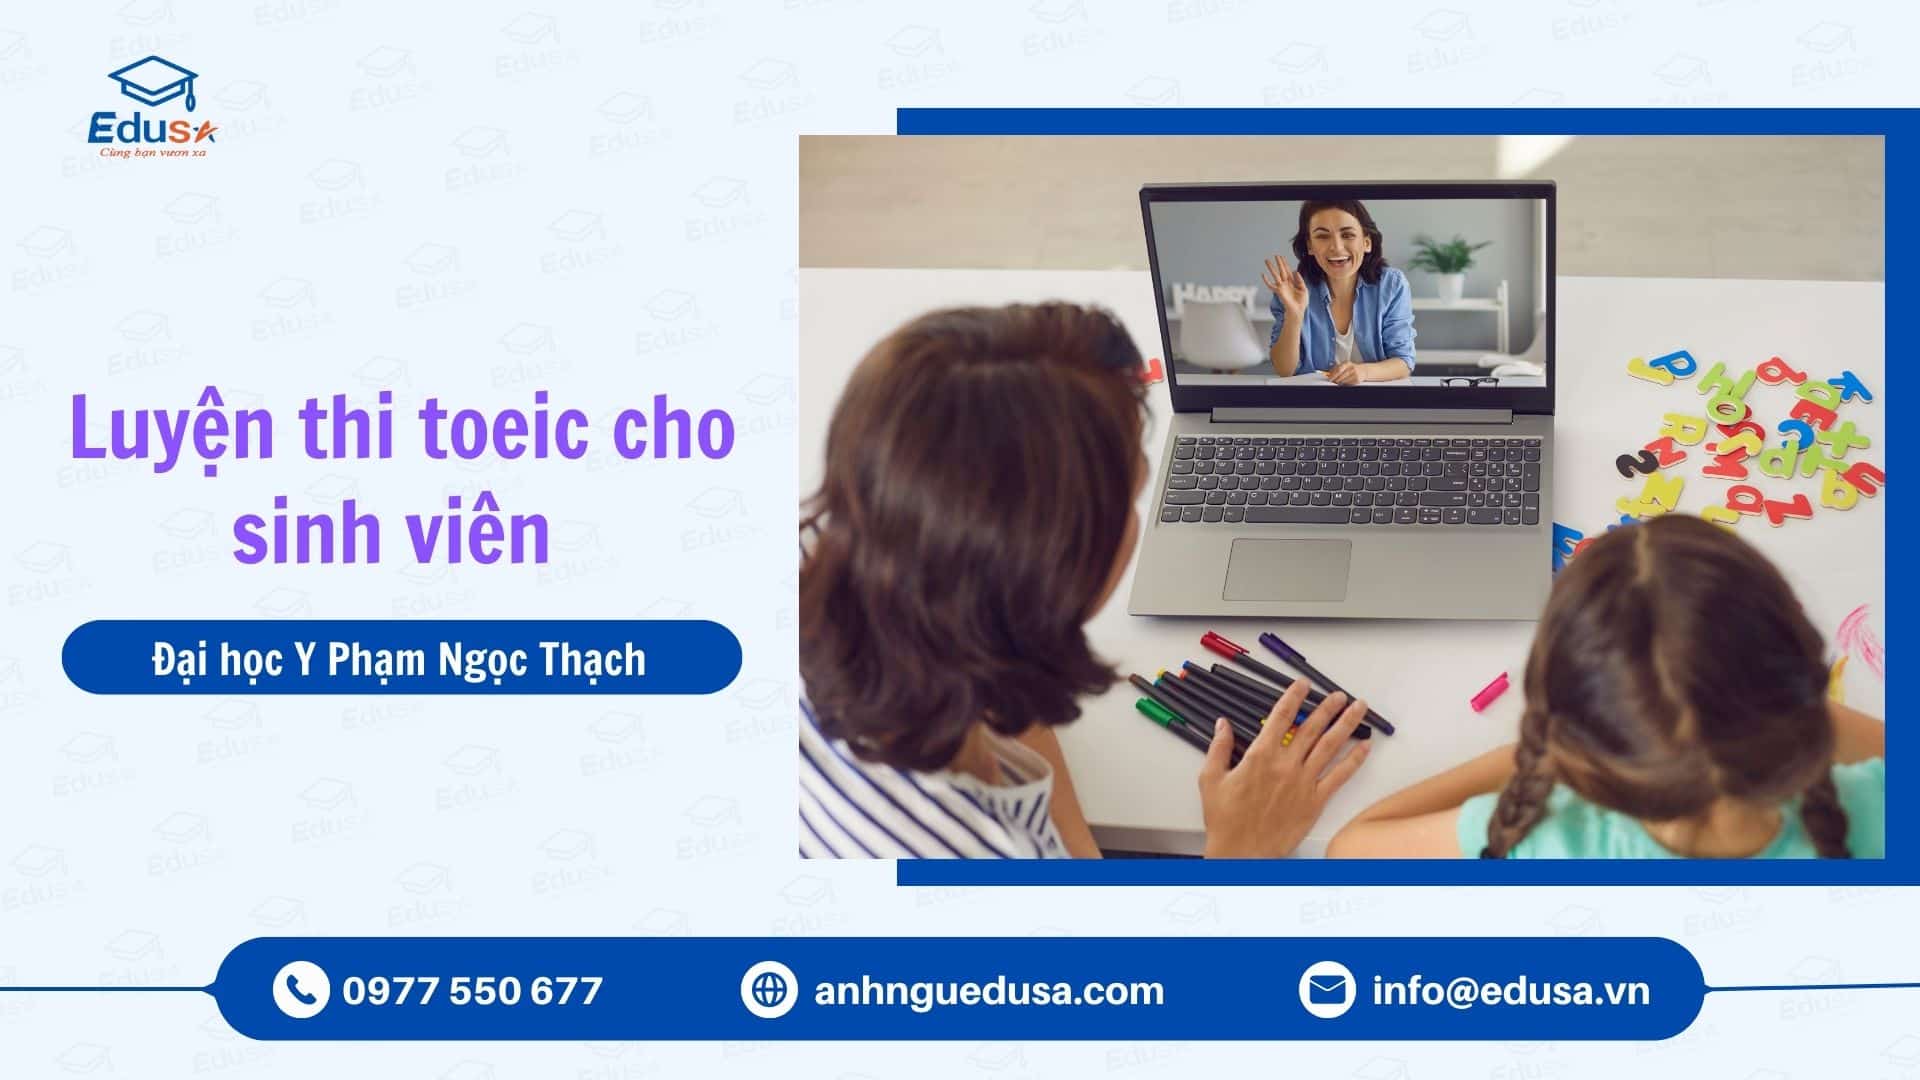 Toeic Cho Sinh Vien Dai Hoc Ngoai Thuong Co So 2 Thanh Pho Ho Chi Minh (1)